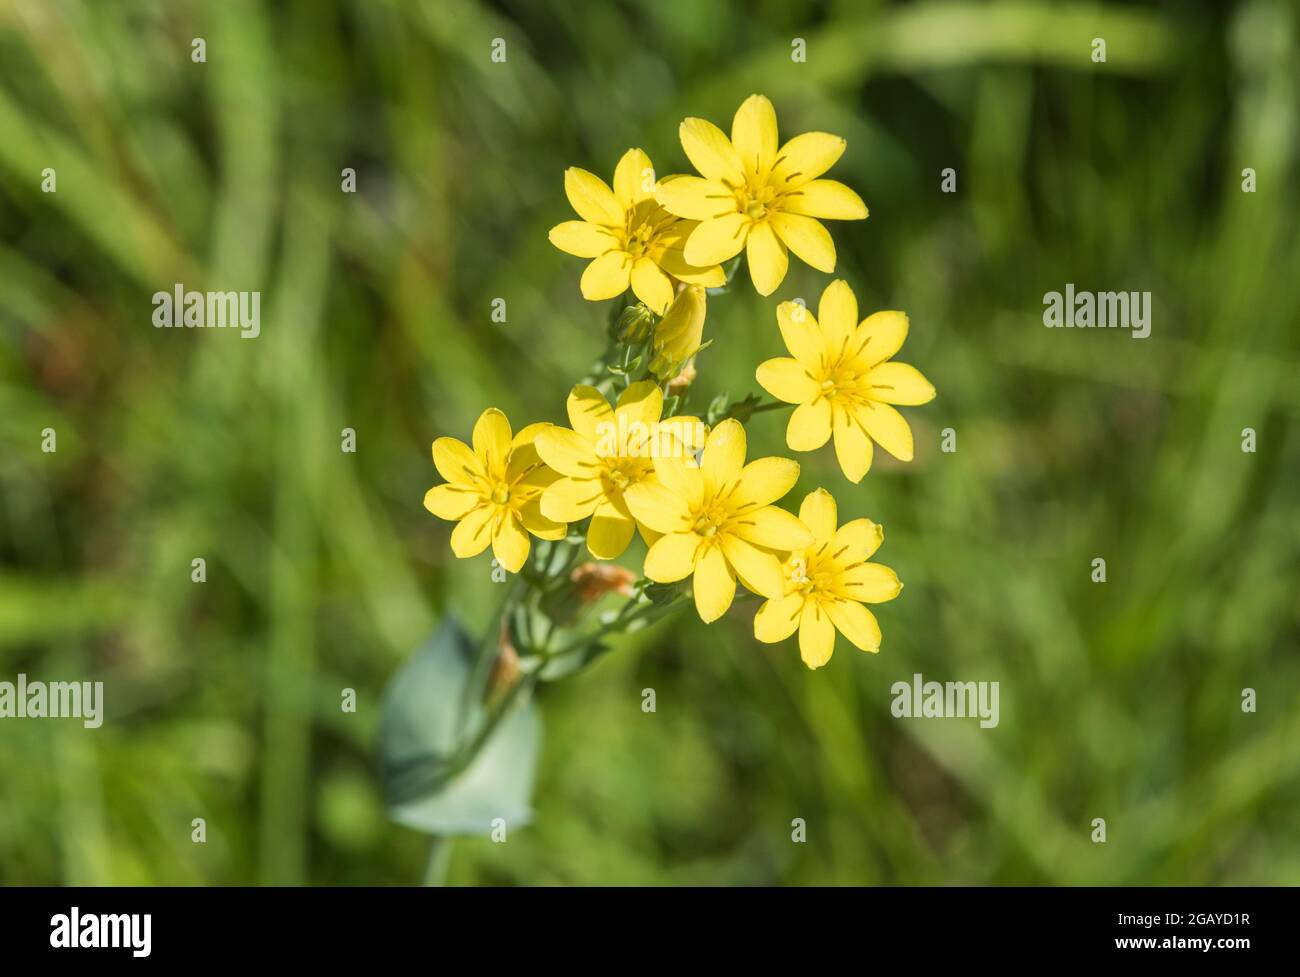 Flowering Yellow-wort (Blackstonia perfoliata) Stock Photo